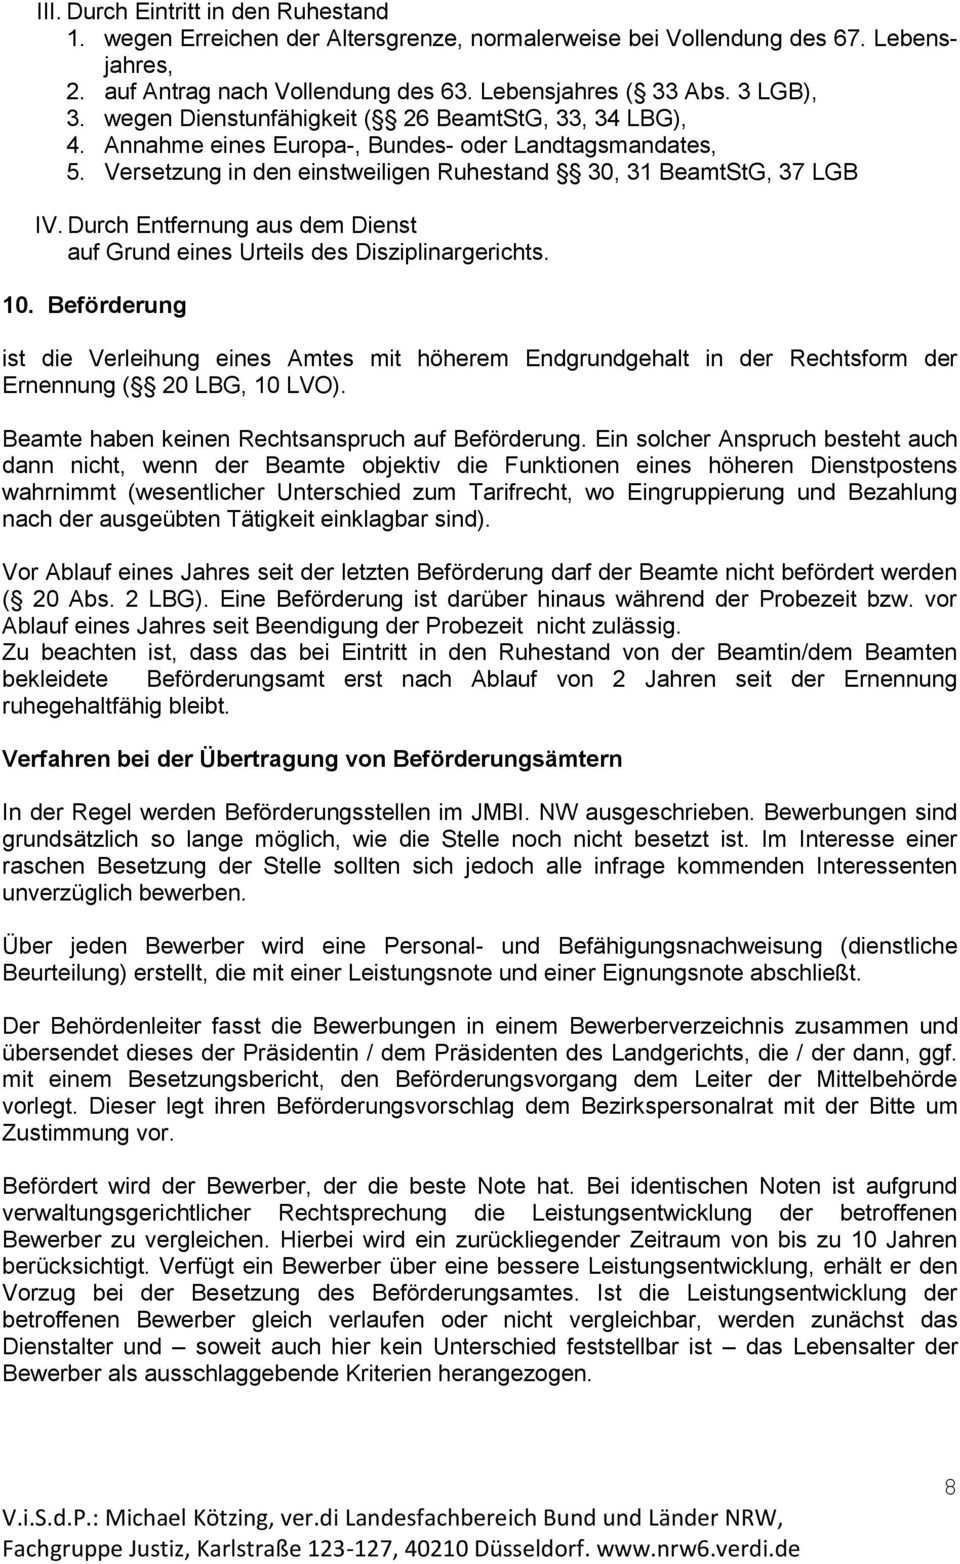 Beamtinnen Und Beamte In Der Justiz Nordrhein Westfalen Pdf Free Download